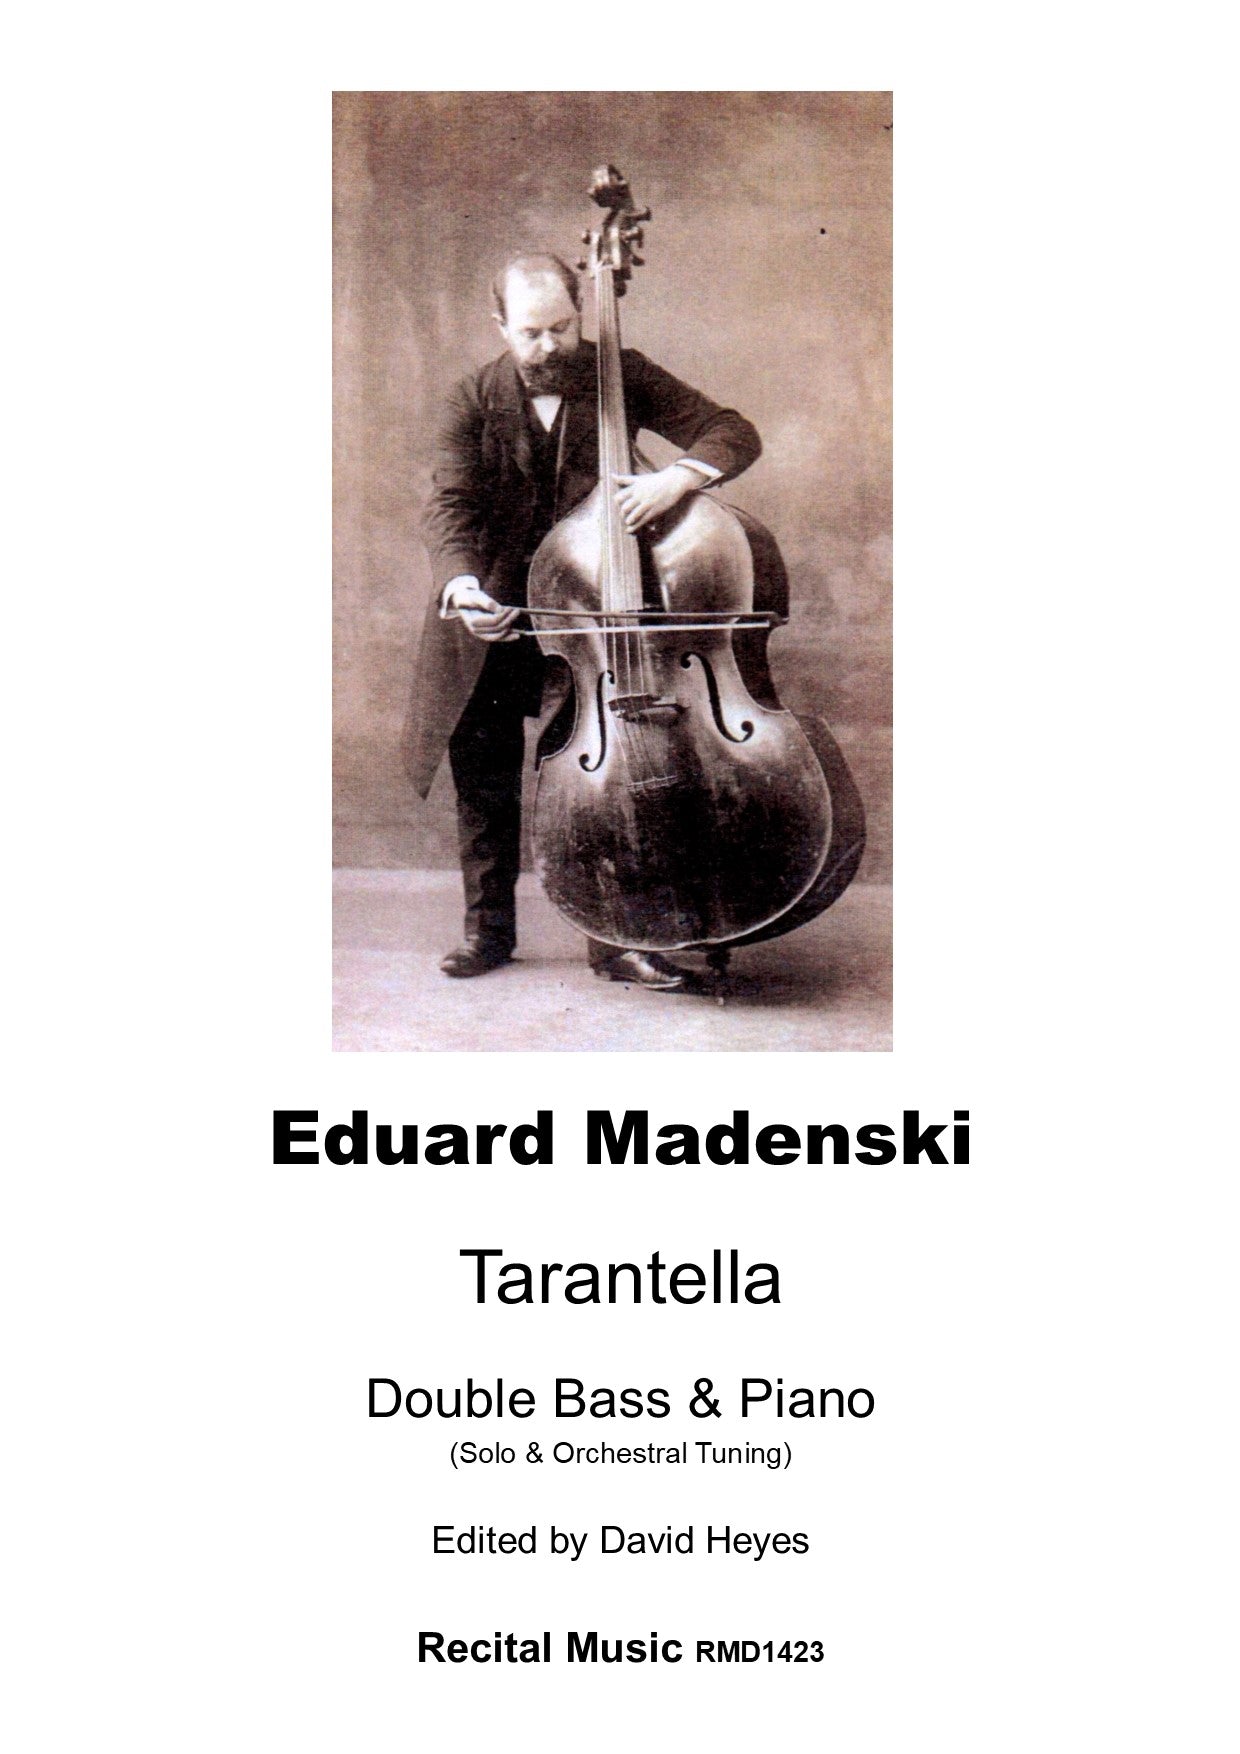 Eduard Madenski: Tarantella for double bass & piano